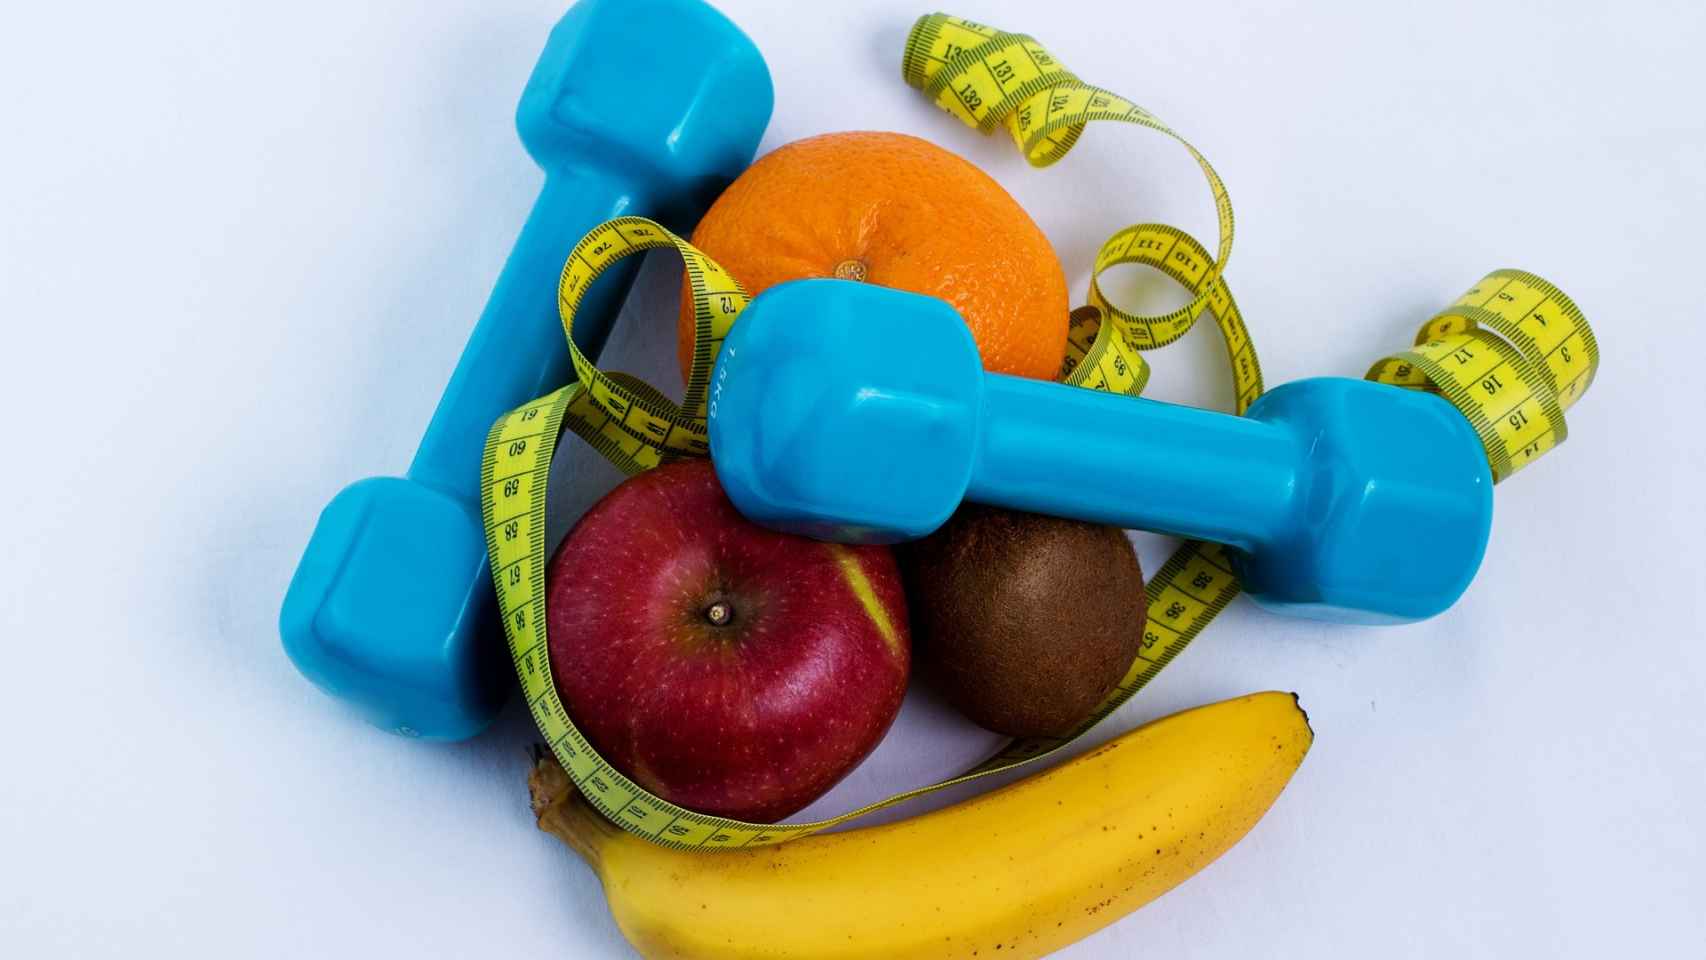 Los plátanos son uno de los alimentos más comunes entre el avituallamiento de los deportistas